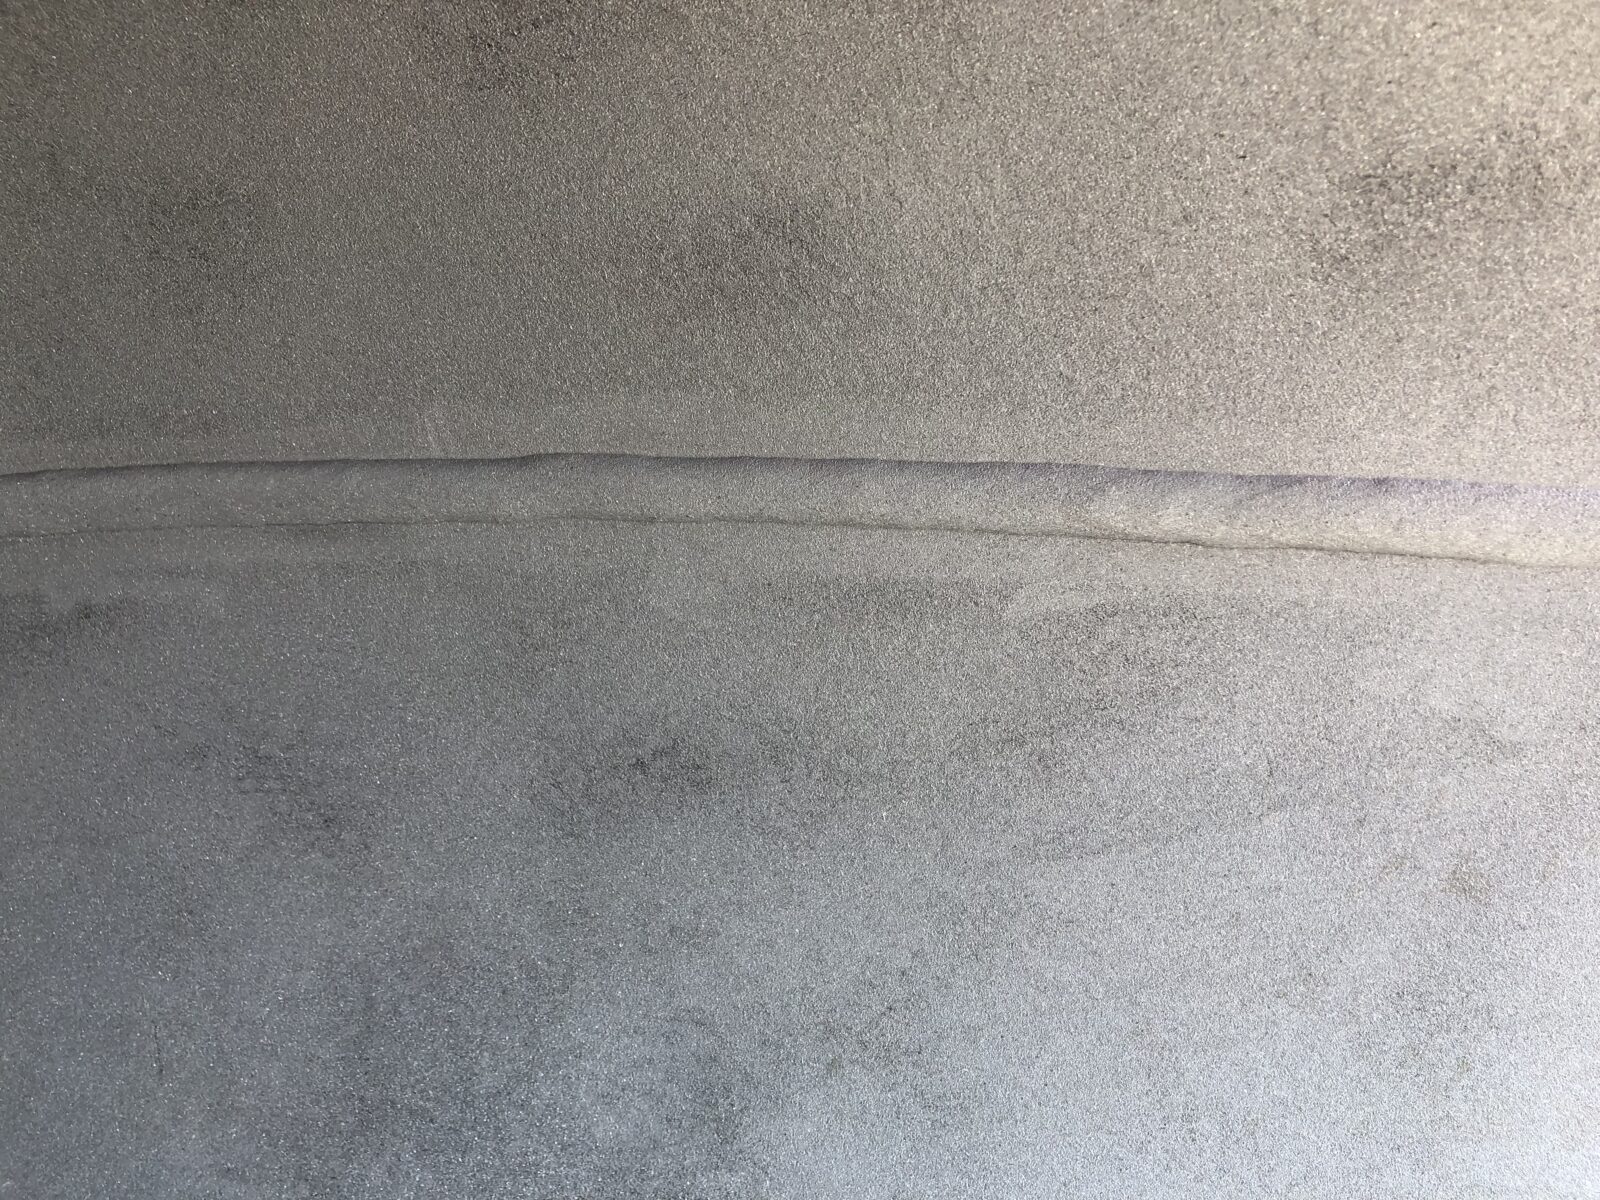 rohrinnenstrahlen, Rohre innen sandstrahlen vorher nachher vergleich - nachher Bild SA2,5